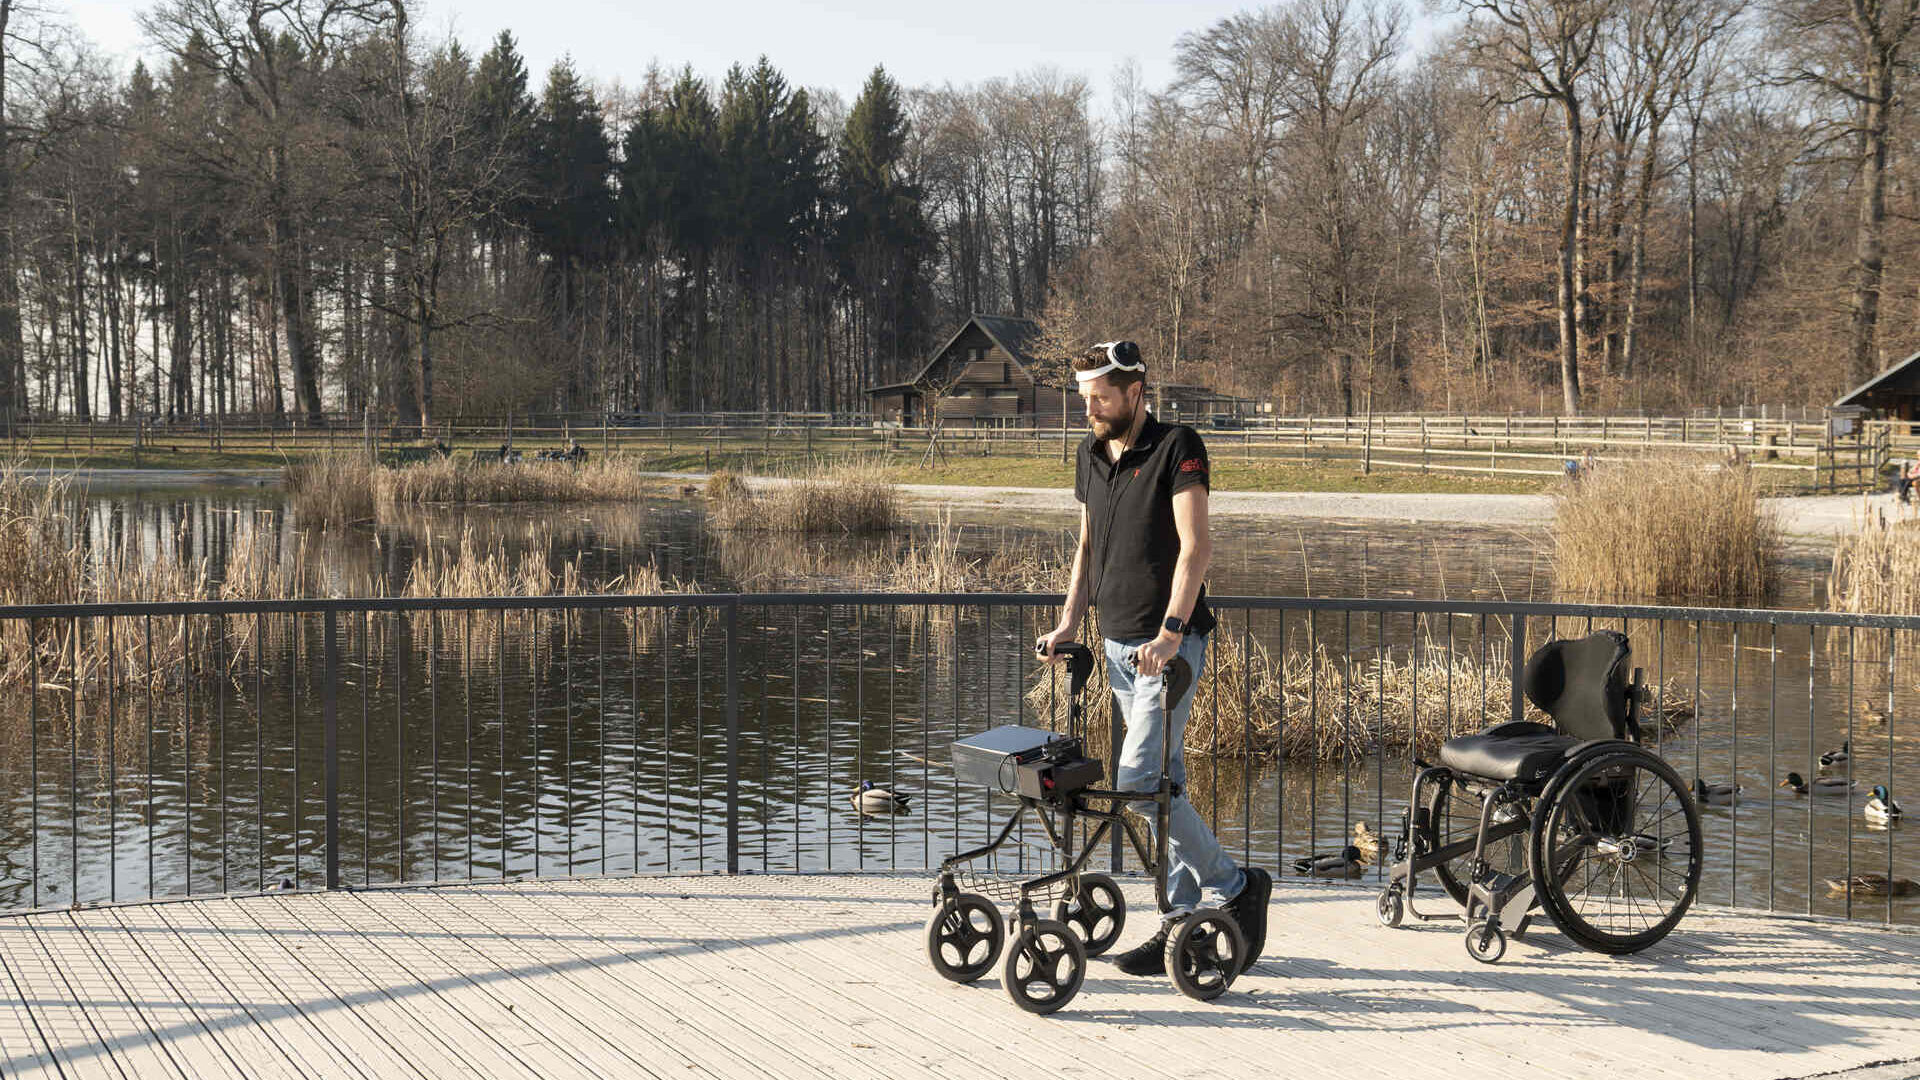 Camminare grazie al pensiero: Gert-Jan Oskam, rimasto paralizzato agli arti inferiori in seguito a un incidente in bicicletta e che ha ripreso a camminare grazie a un ponte digitale fra cervello e midollo spinale, al Centre Hospitalier Universitaire Vaudois